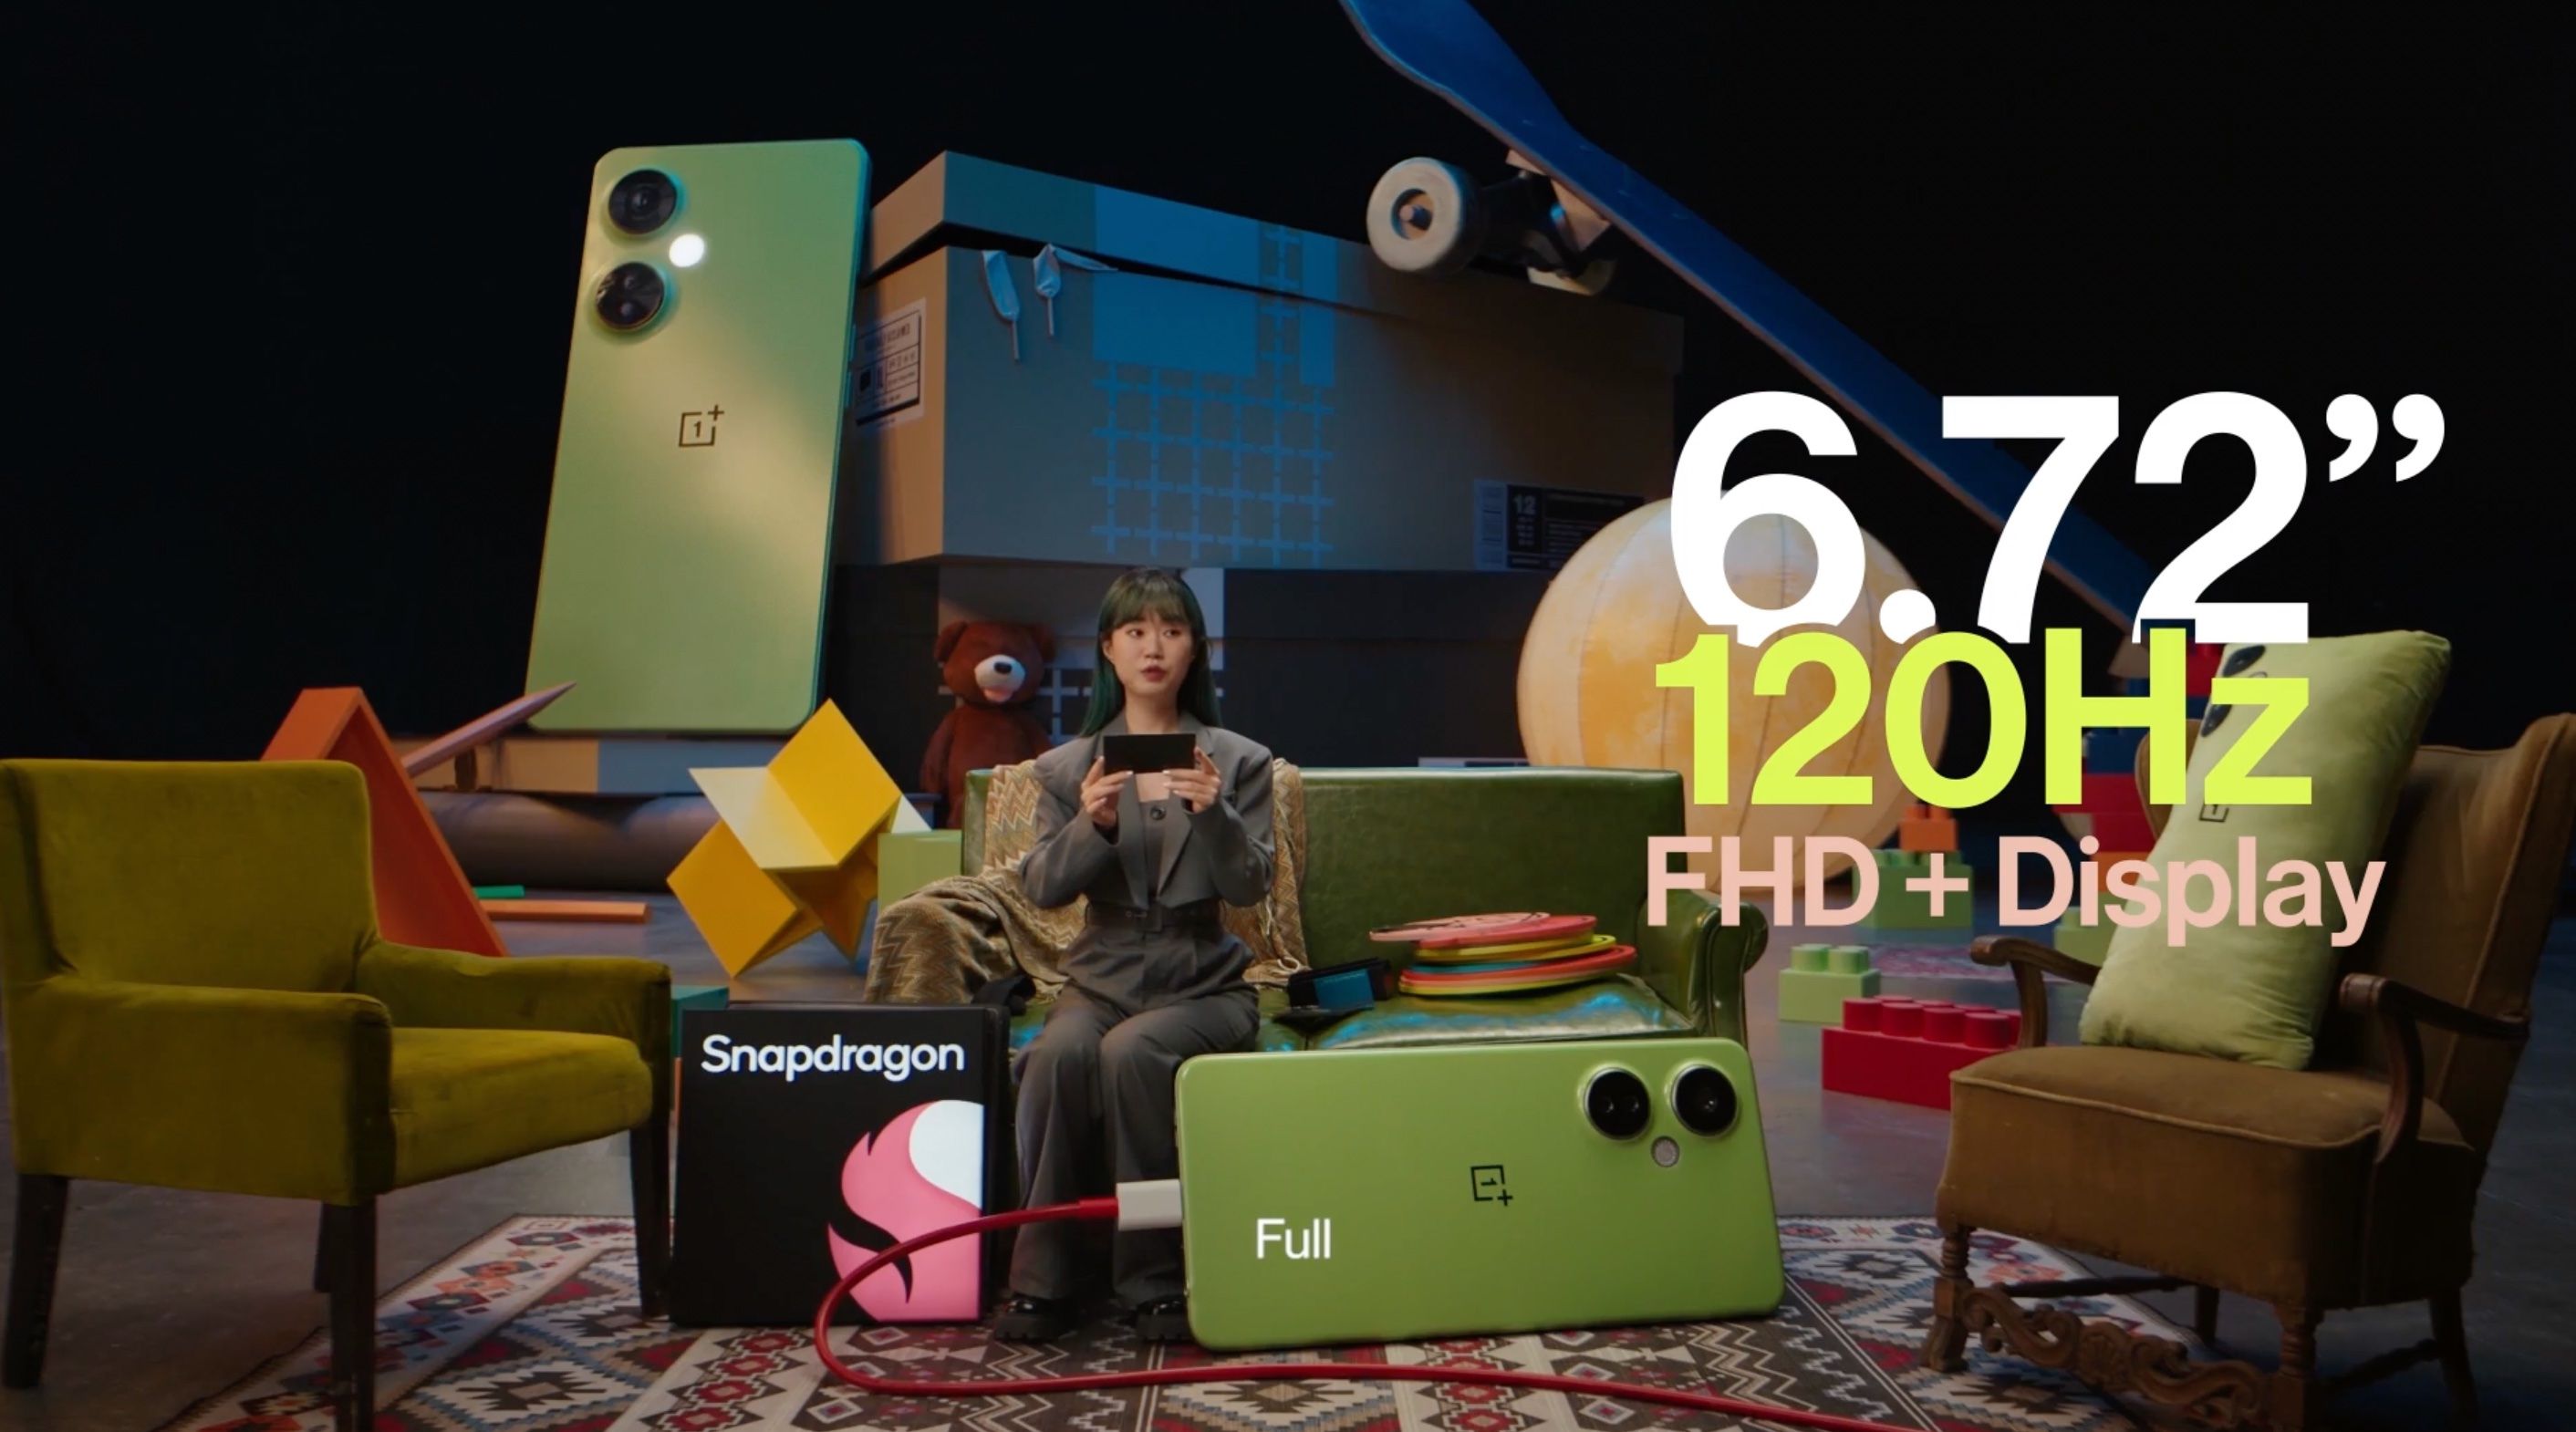 OnePlus Nord CE 3 com tela FHD+ de 120 Hz de 6,72 polegadas